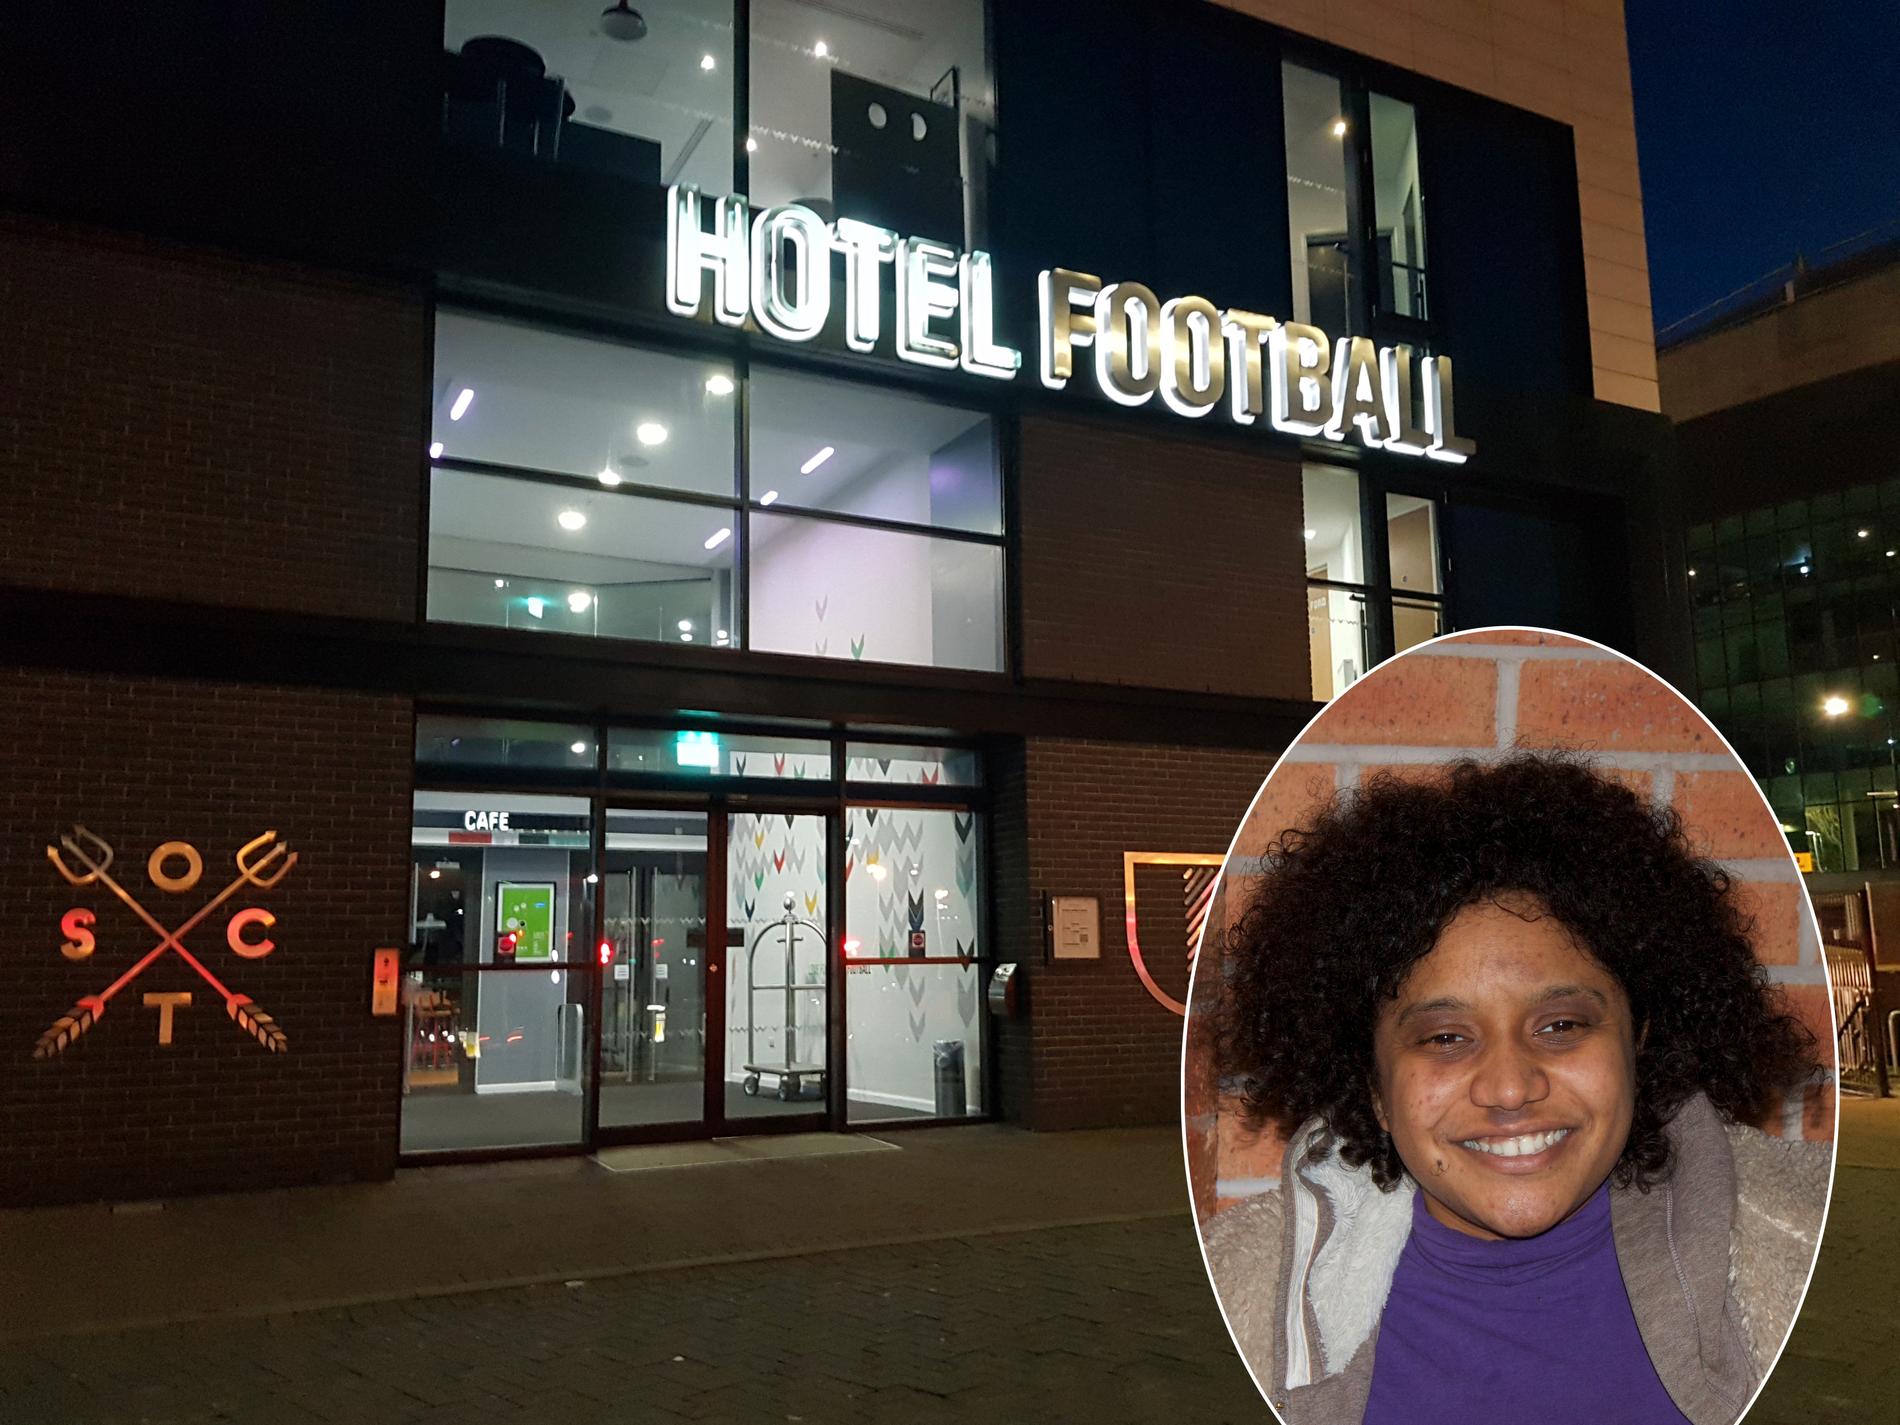 På pubel Hotel Football träffar Sportbladet Natalie Burrell.